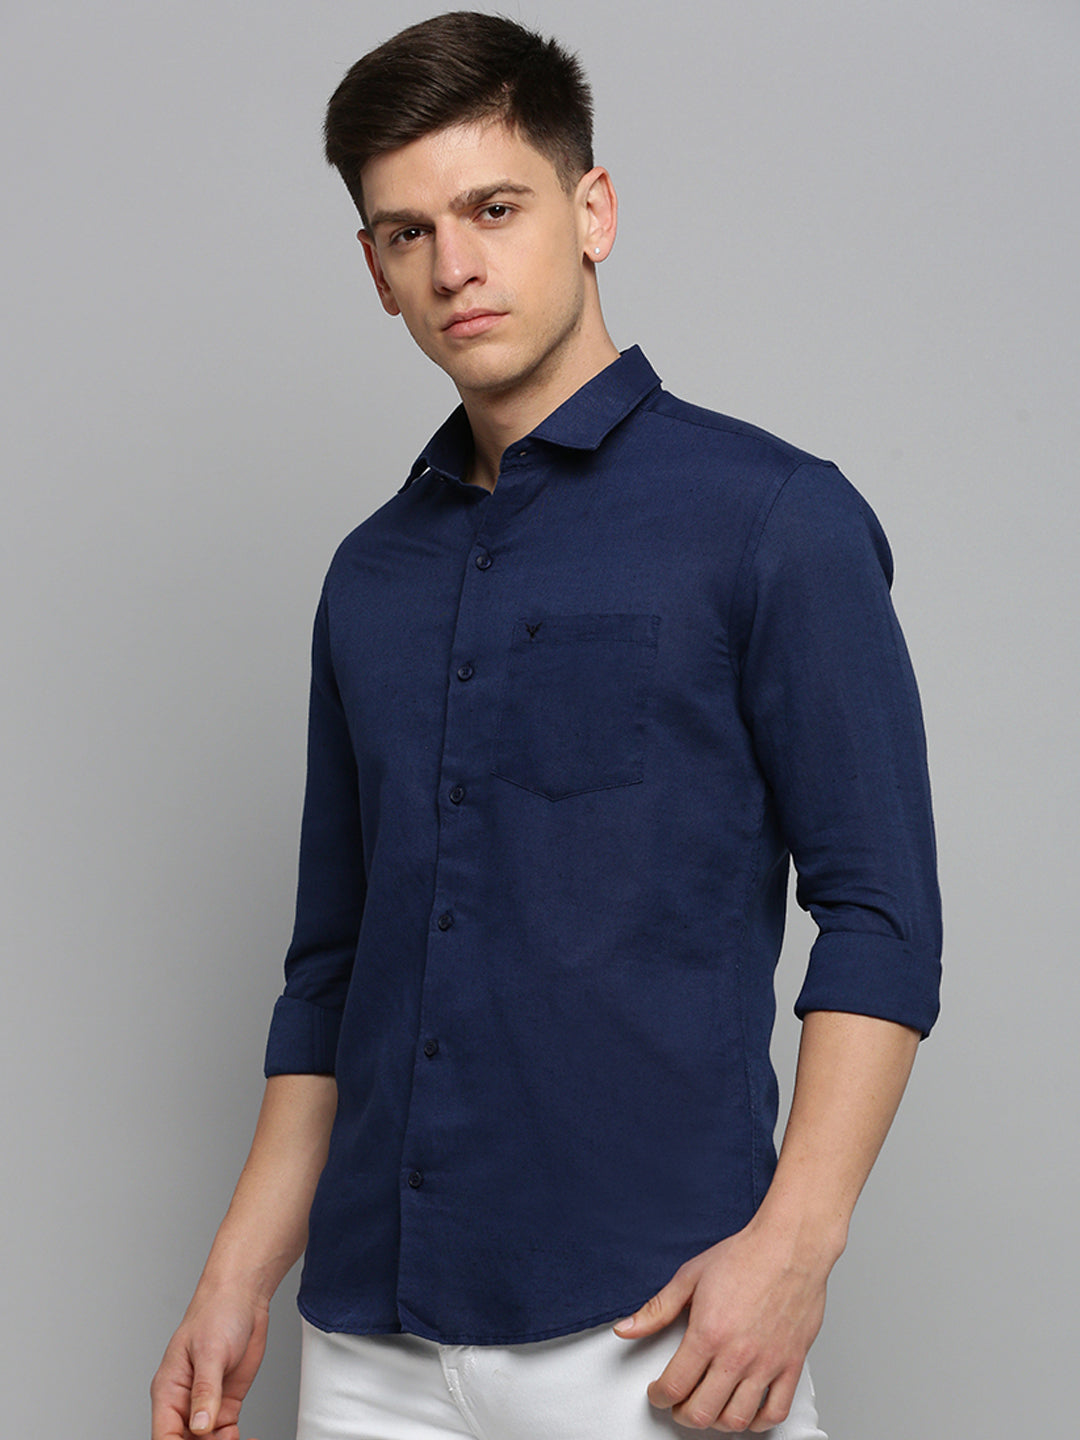 Men Spread Collar Solid Navy Blue Shirt